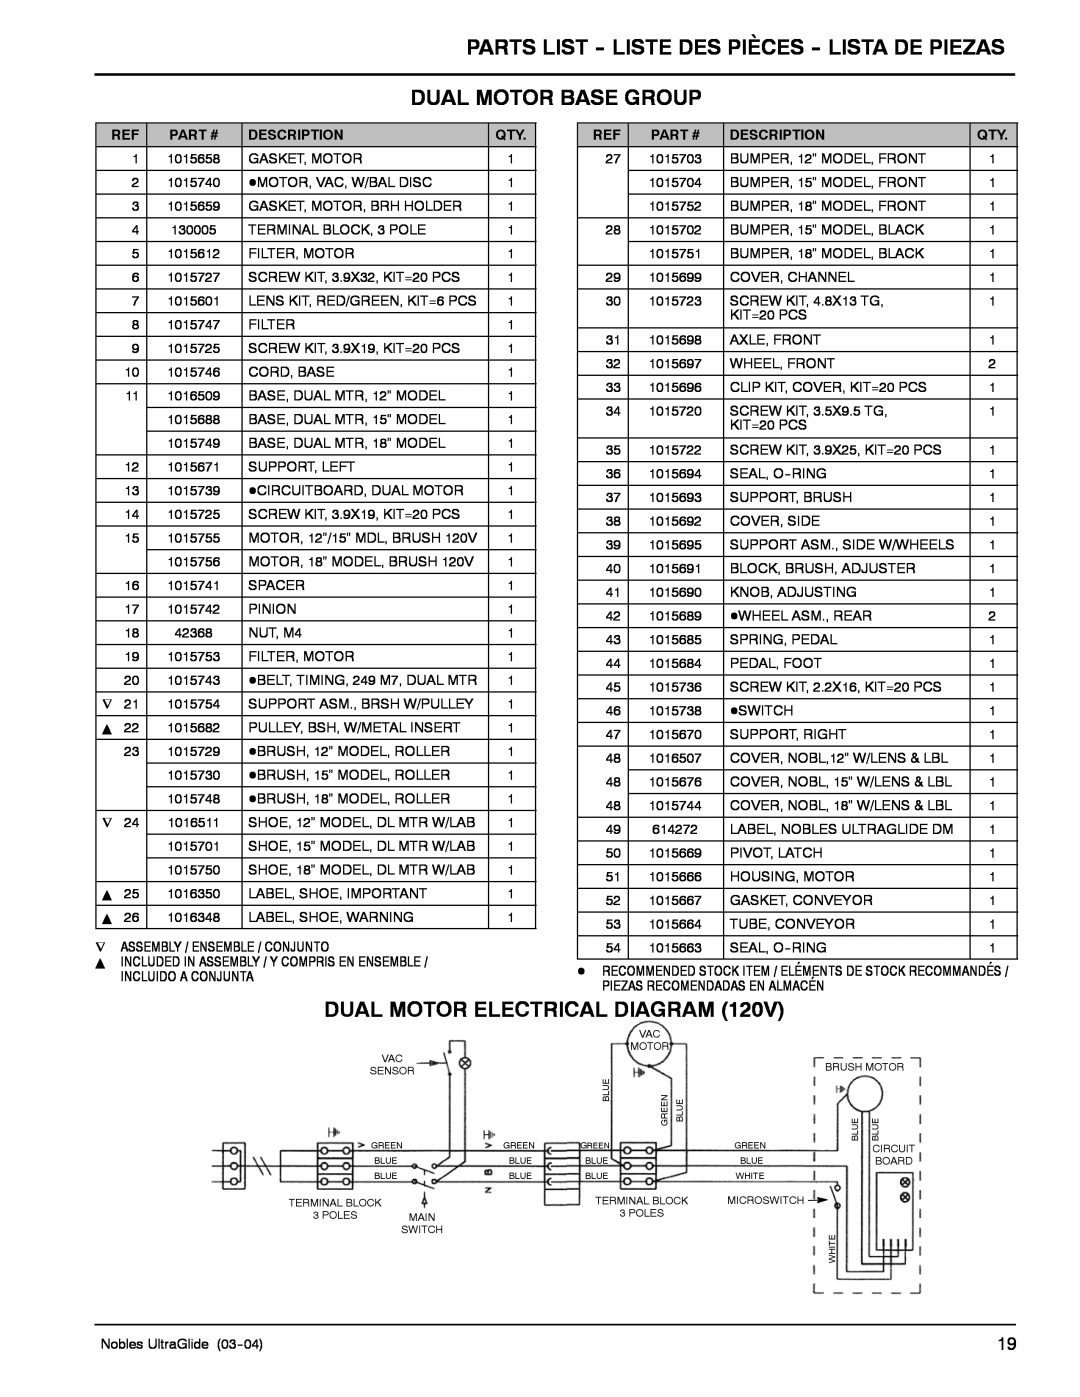 Nilfisk-ALTO 614220 Parts List - Liste Des Pièces - Lista De Piezas, Dual Motor Base Group, Dual Motor Electrical Diagram 